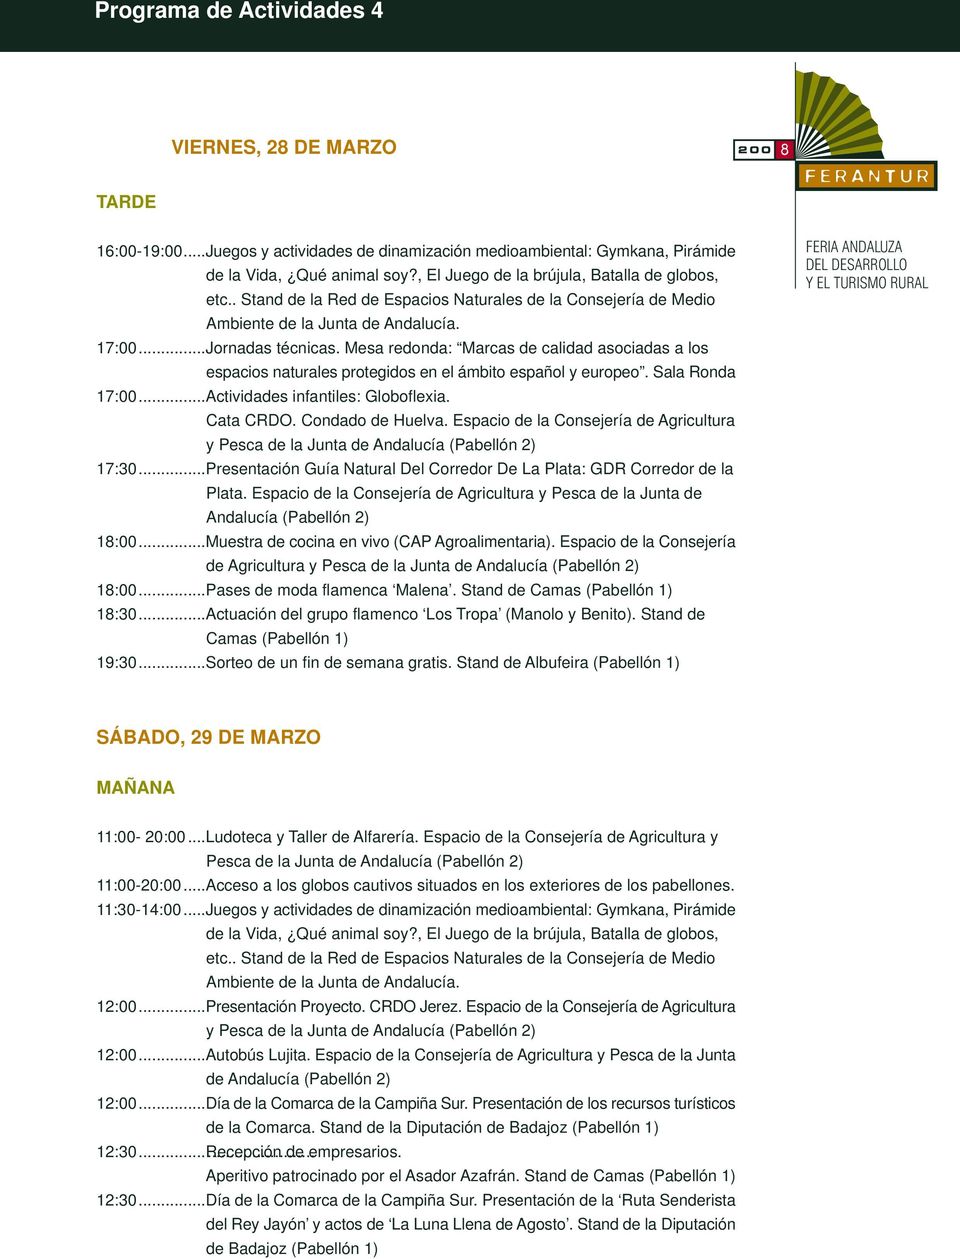 Espacio de la Consejería de Agricultura 17:30...Presentación Guía Natural Del Corredor De La Plata: GDR Corredor de la Plata.